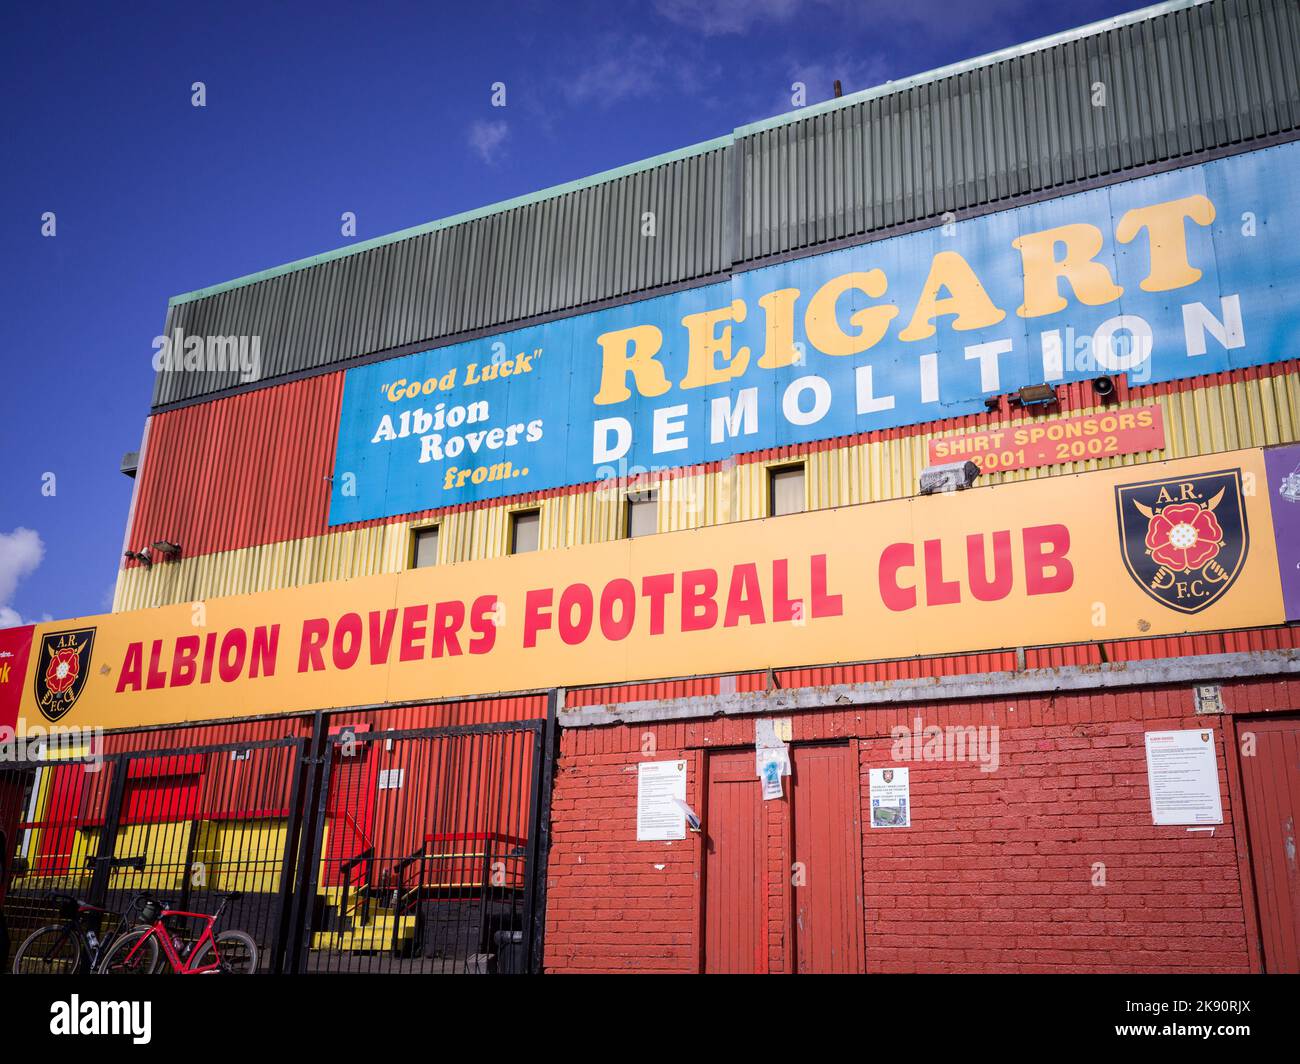 El Albion Rovers Football Club es un equipo de fútbol semiprofesional de Coatbridge, North Lanarkshire, Escocia. Foto de stock